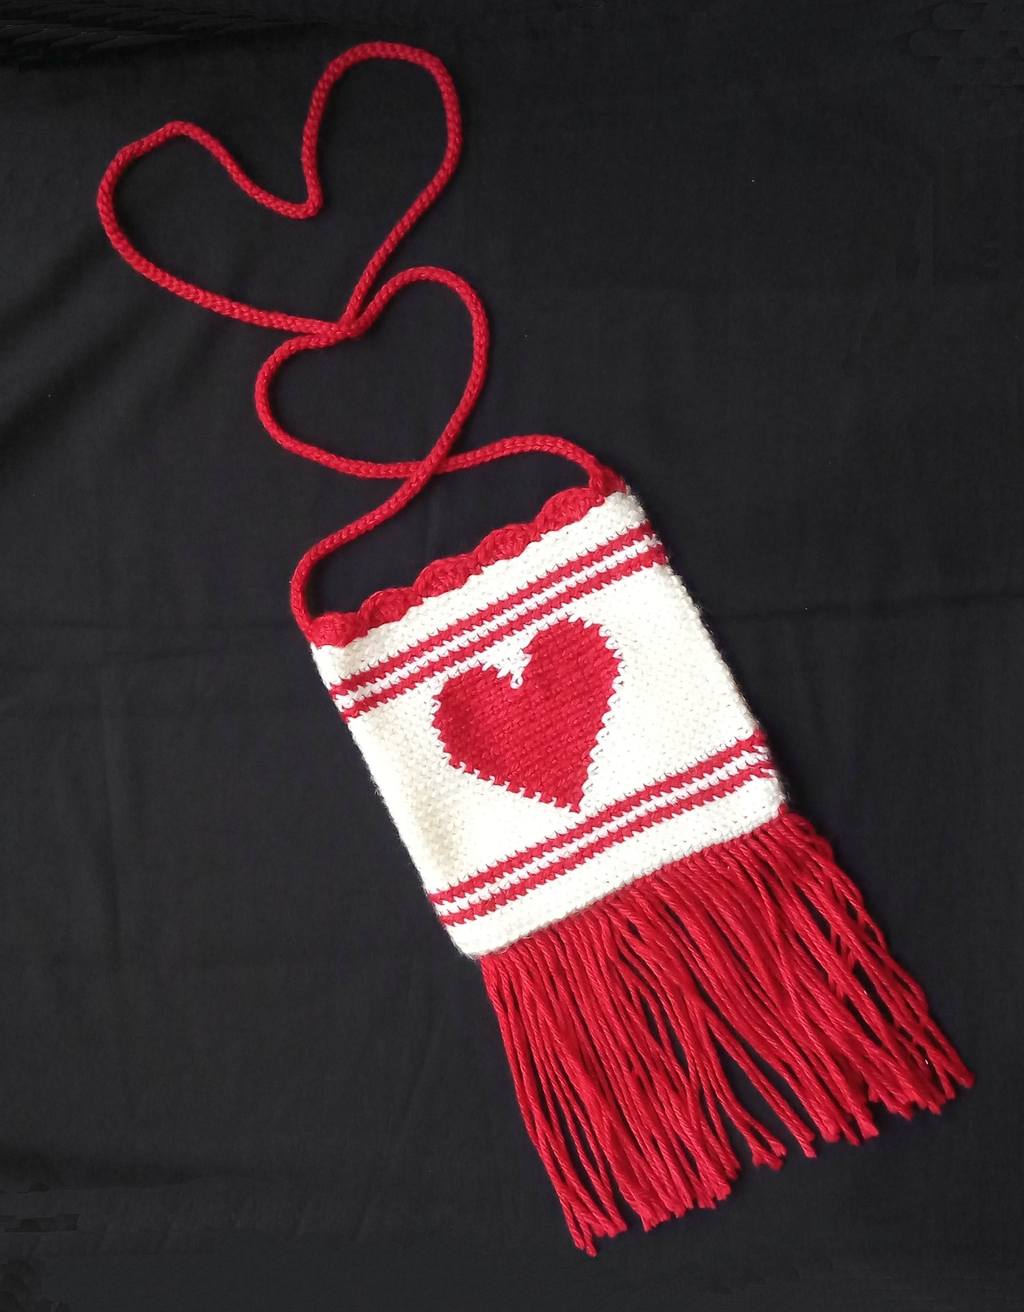 Red Heart Crochet Mixed Bag Pattern